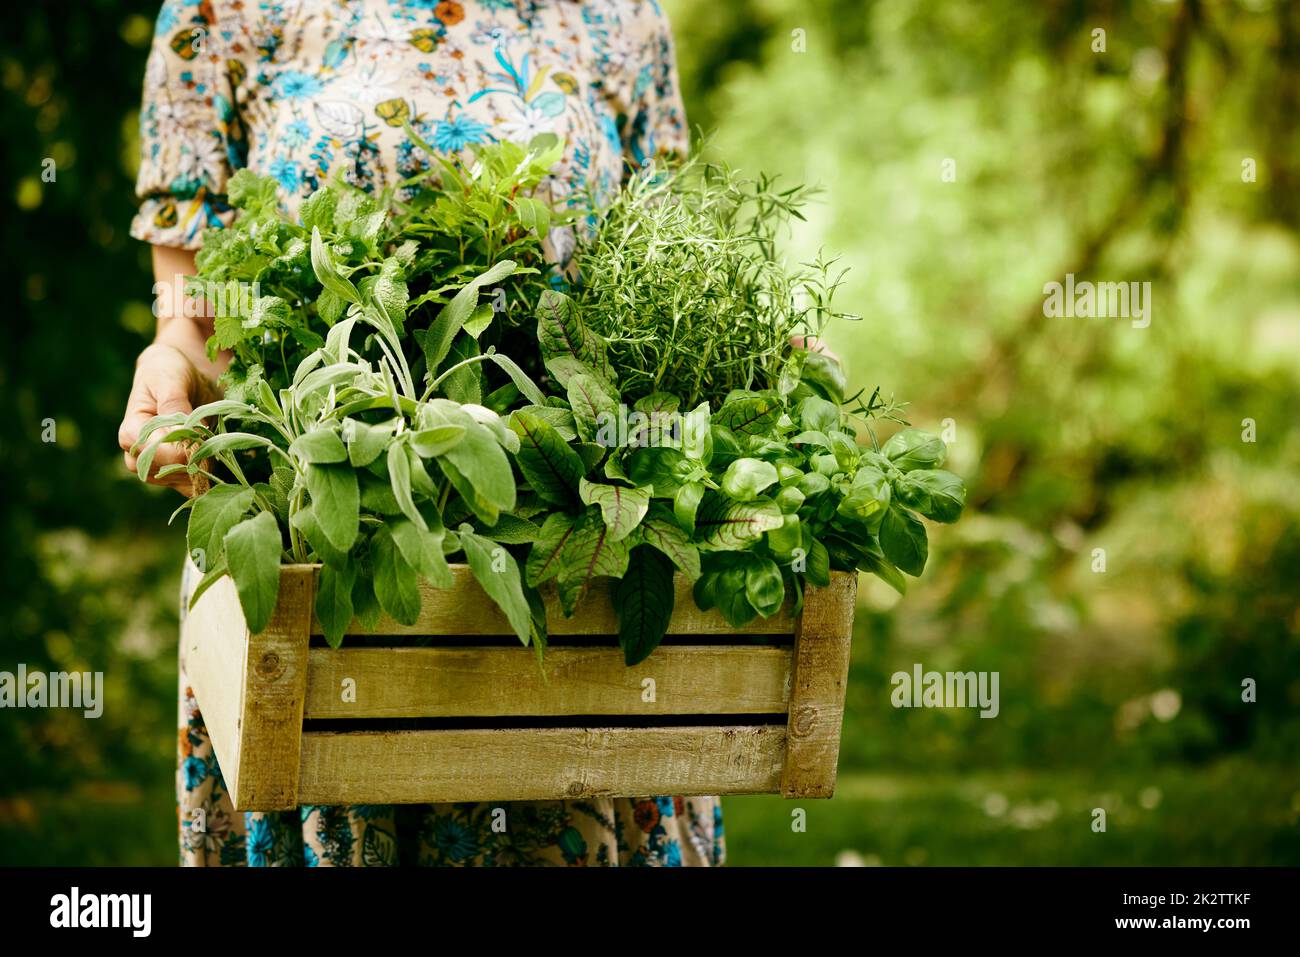 Jardinier anonyme avec des légumes verts collectés dans un conteneur Banque D'Images